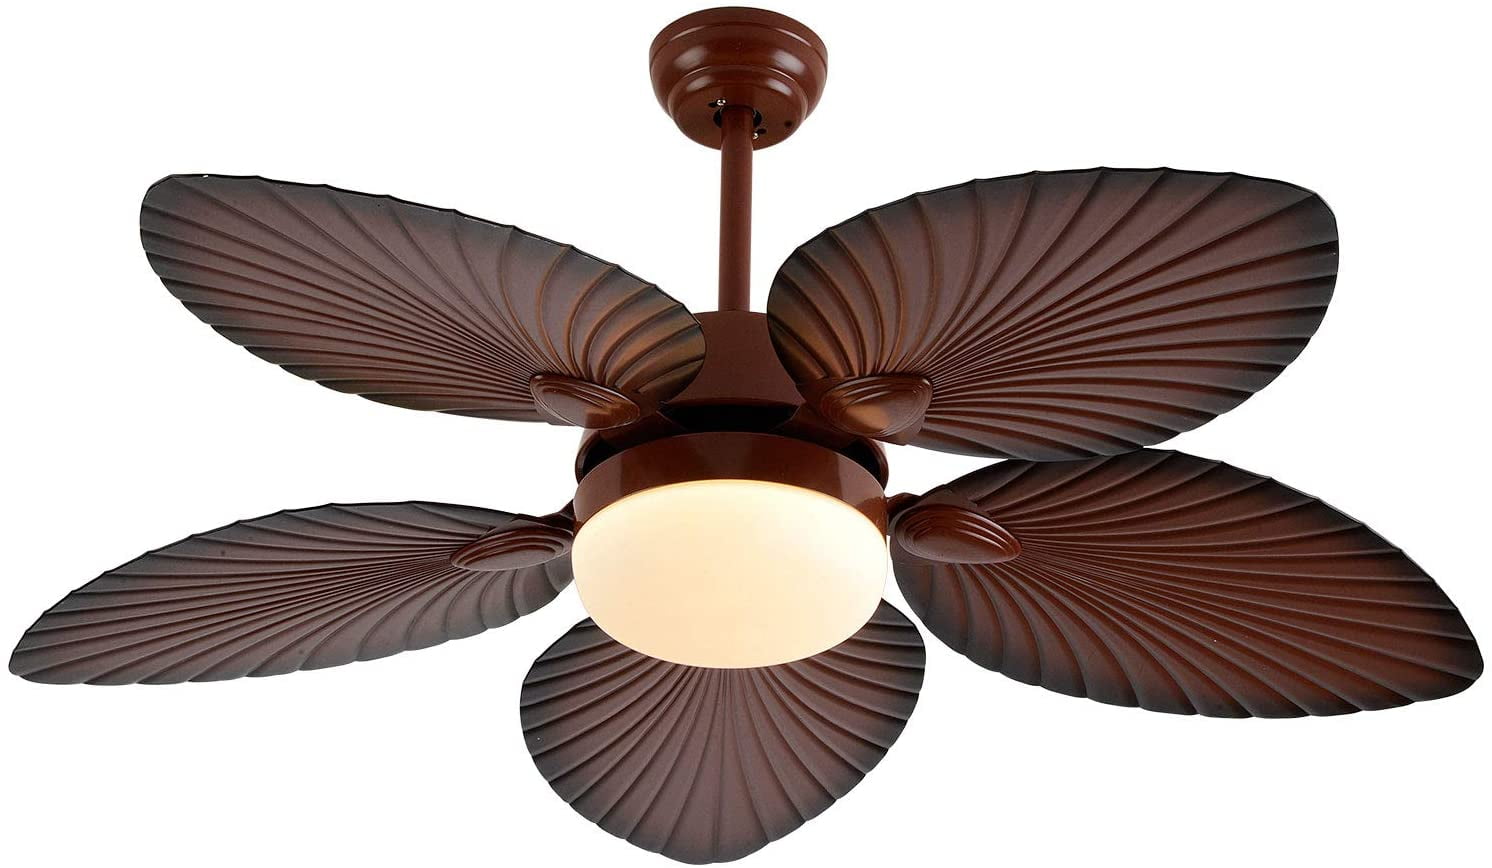 TFCFL 52" Ceiling Fan with LED Light, Tropical Fandelier Fan with